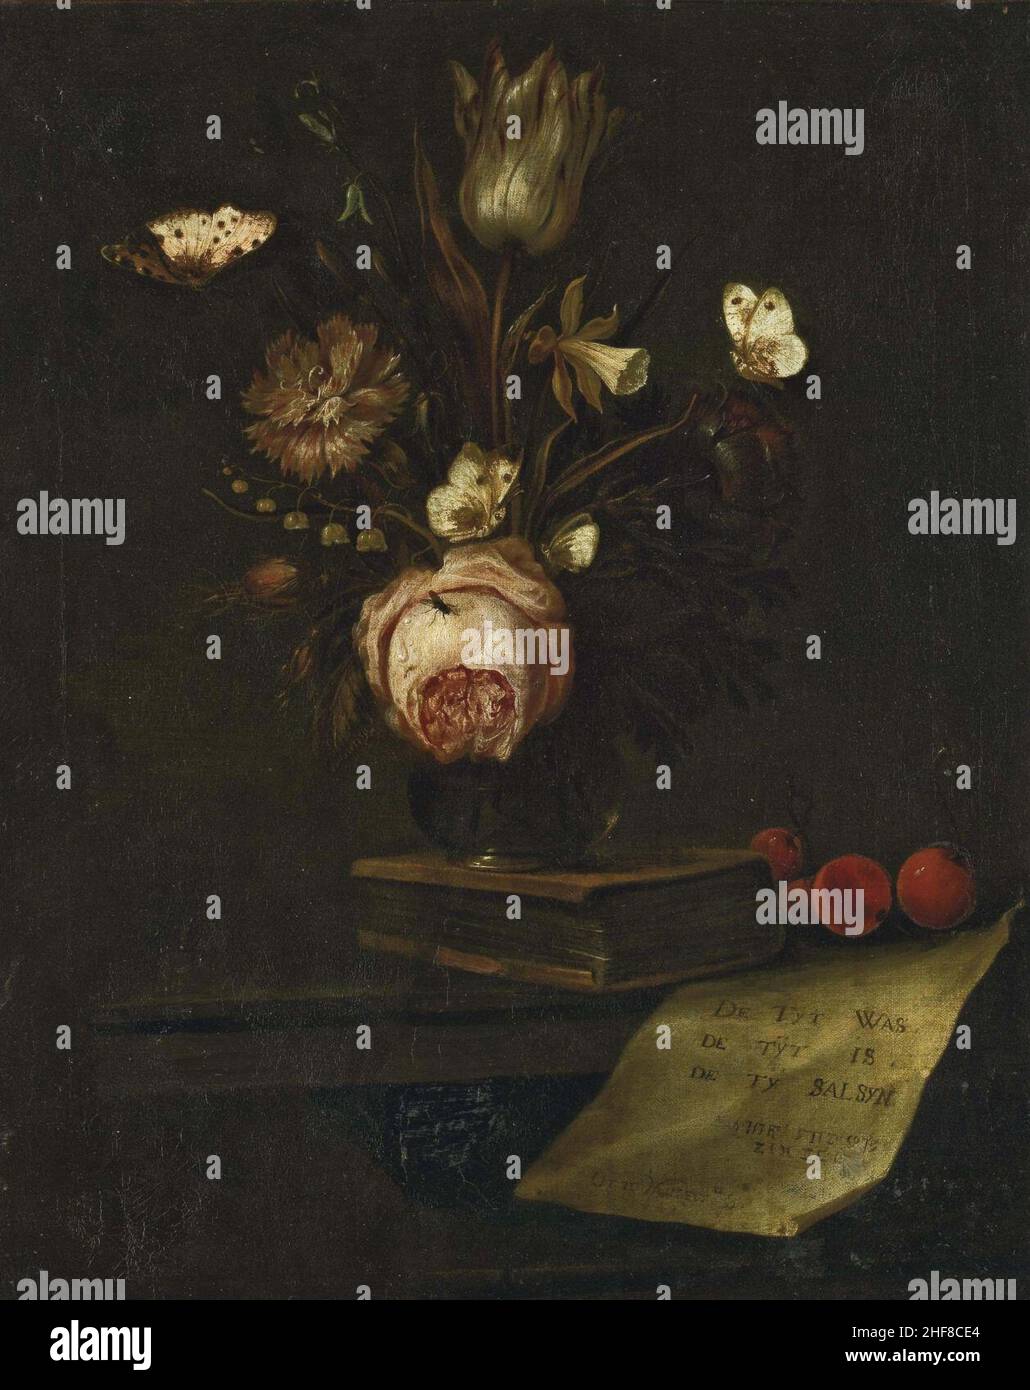 Otto Marseus van Schrieck - Tulipe, oeillet, jonquille et anémone dans un vase posé sur un livre sur une table entouré de papillons. Stock Photo